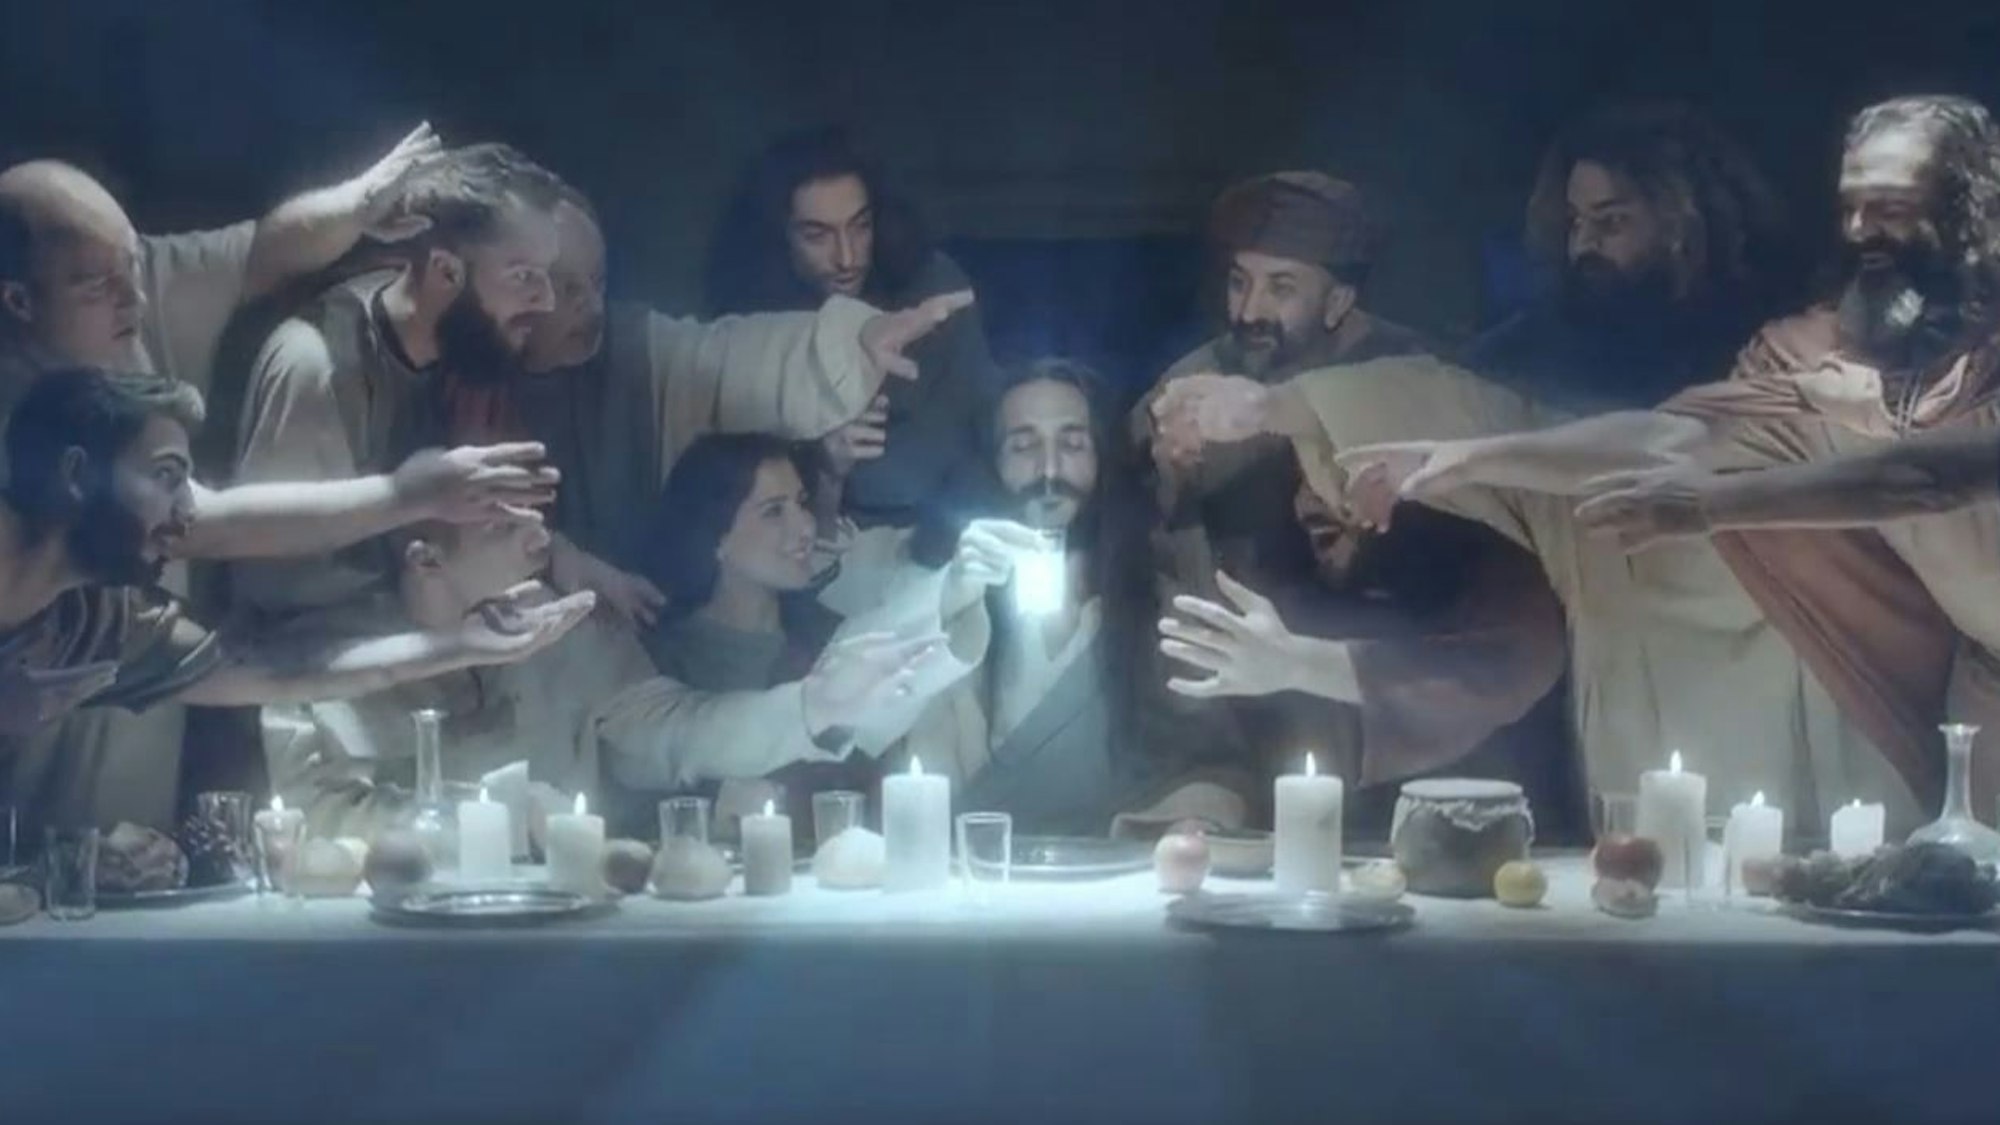 Jesus hat Wasser und den Raki gemischt und nimmt gleich einen Schluck des milchigen Getränks, das wie eine Er­schei­nung wirkt. Im Werbeclip ist neben den Jüngern auch eine Frau am Tisch.